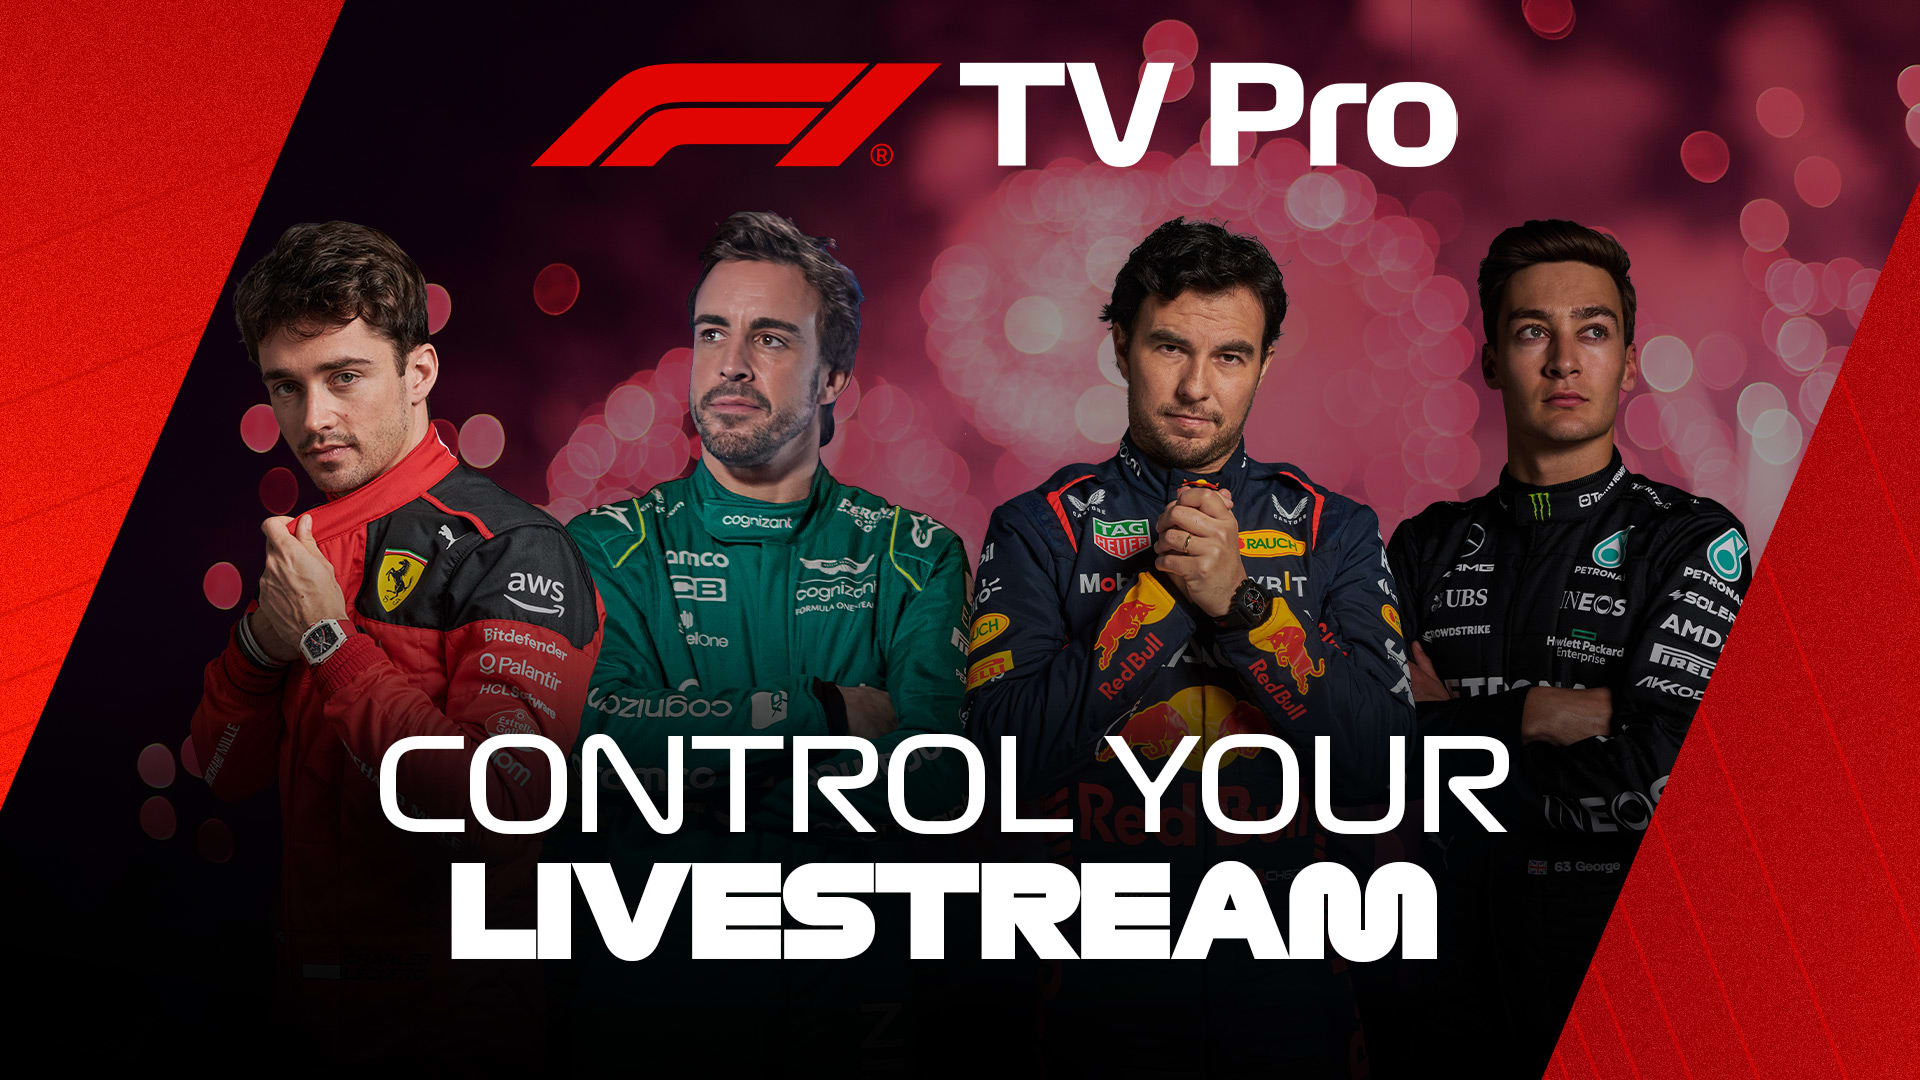 How to stream the 2023 Miami Grand Prix on F1 TV Pro Formula 1®